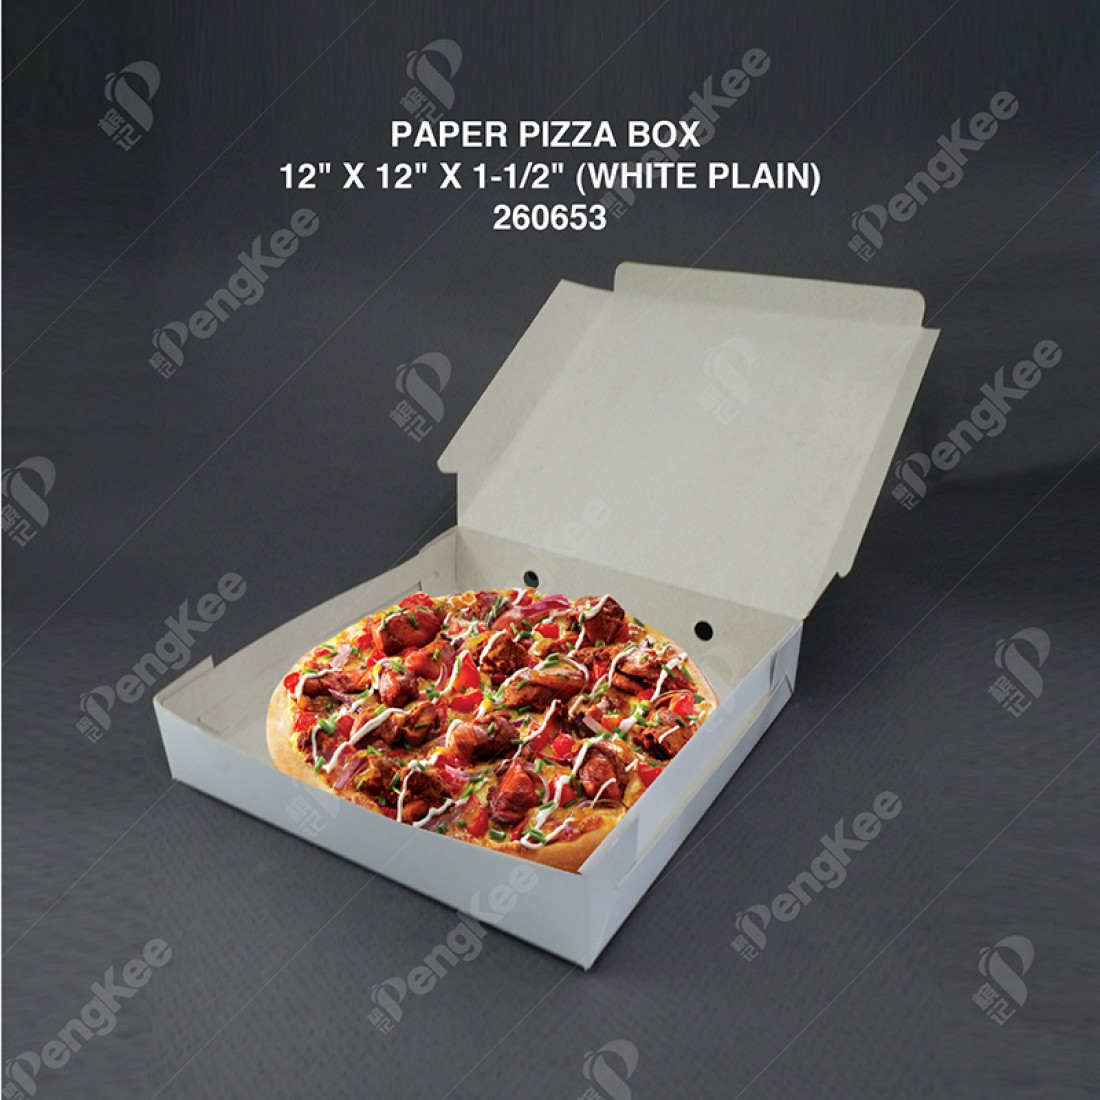 PAPER PIZZA BOX 12" X 12" X 1-1/2" (WHITE PLAIN) (100'S/PKT)